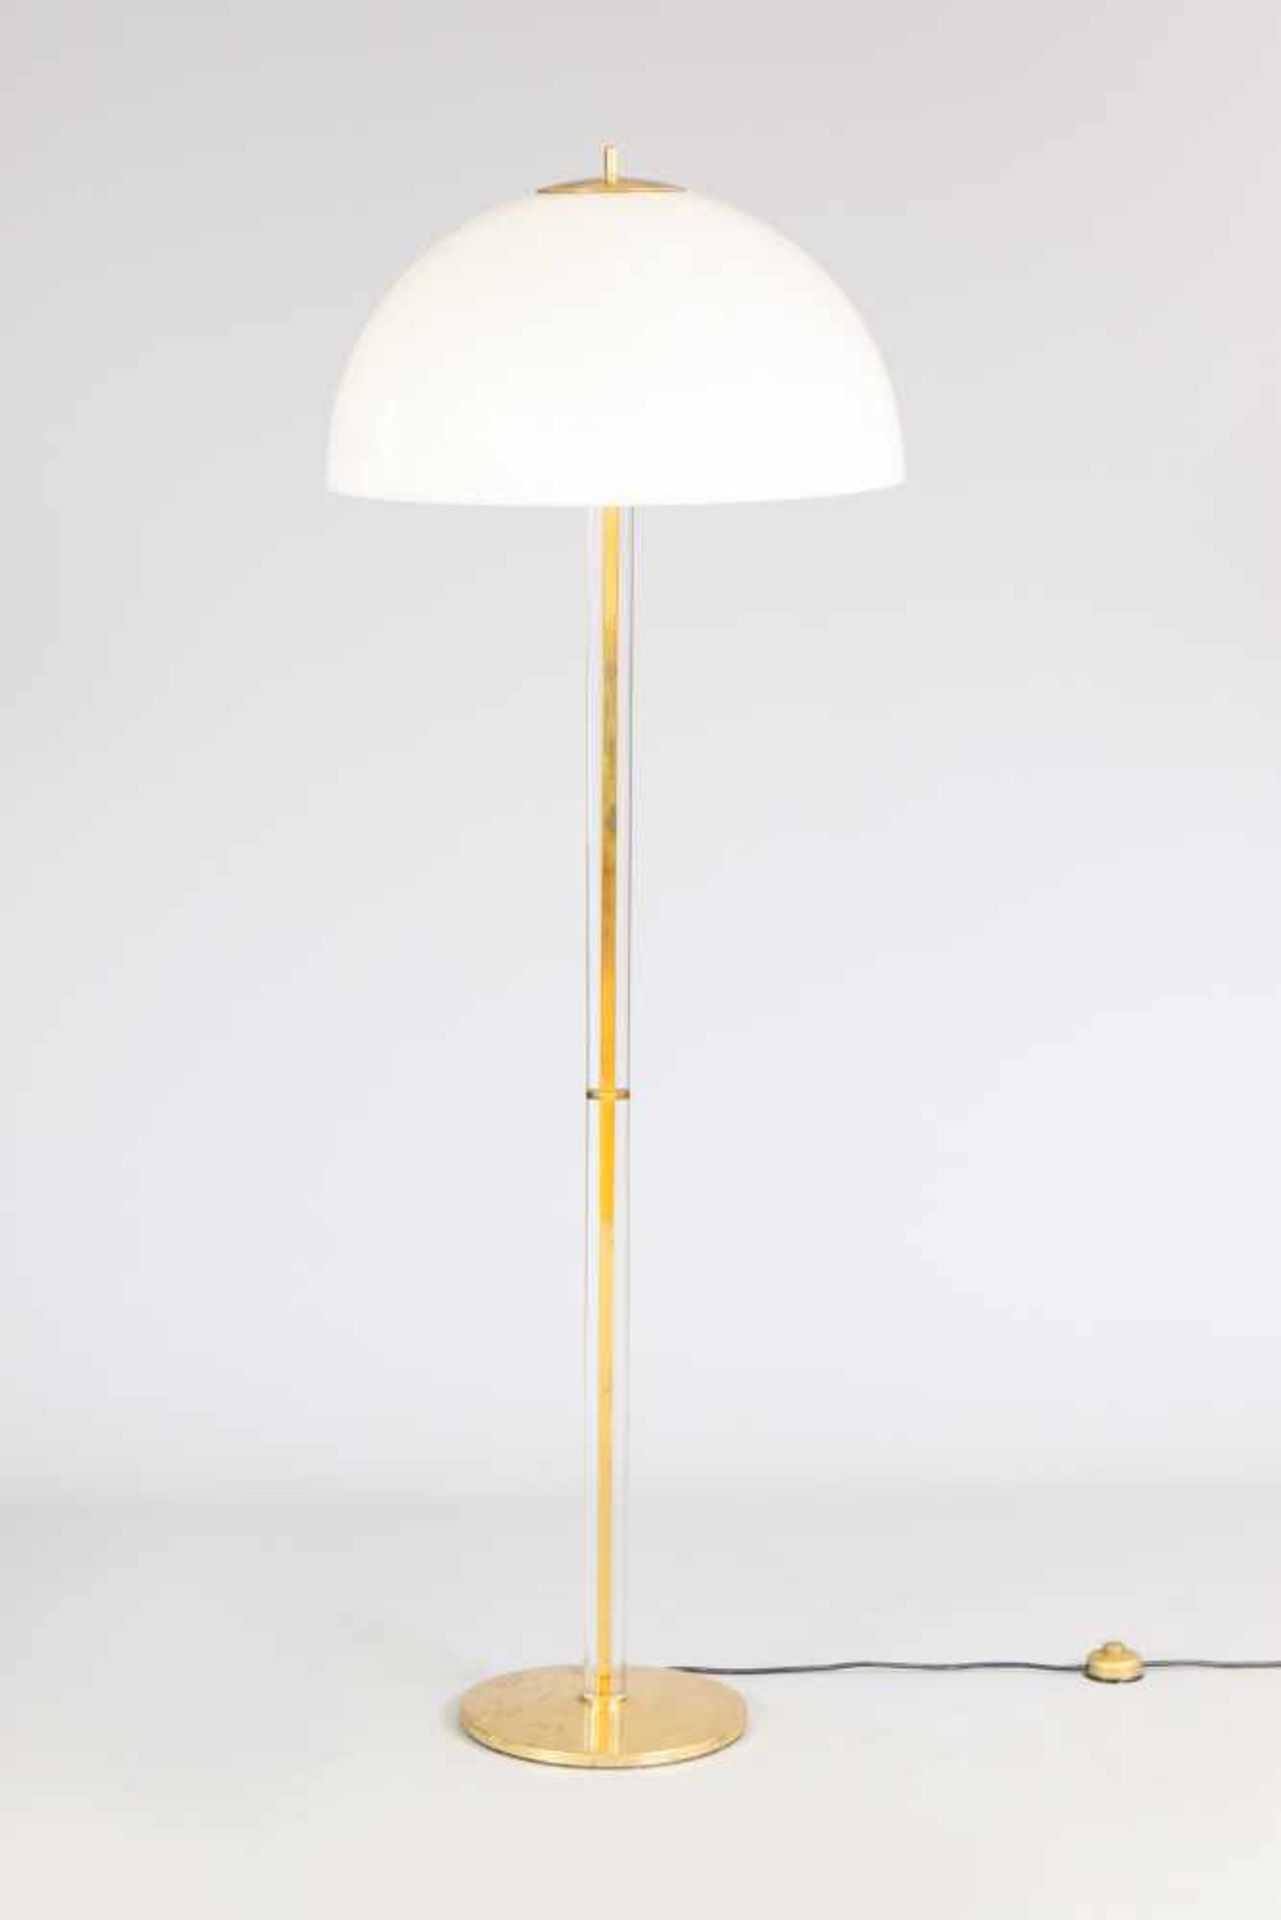 Stehlampe im Stile der 1970er Jahrekuppelförmiger Kunststoff-Schirm auf stangenförmigem Messing-